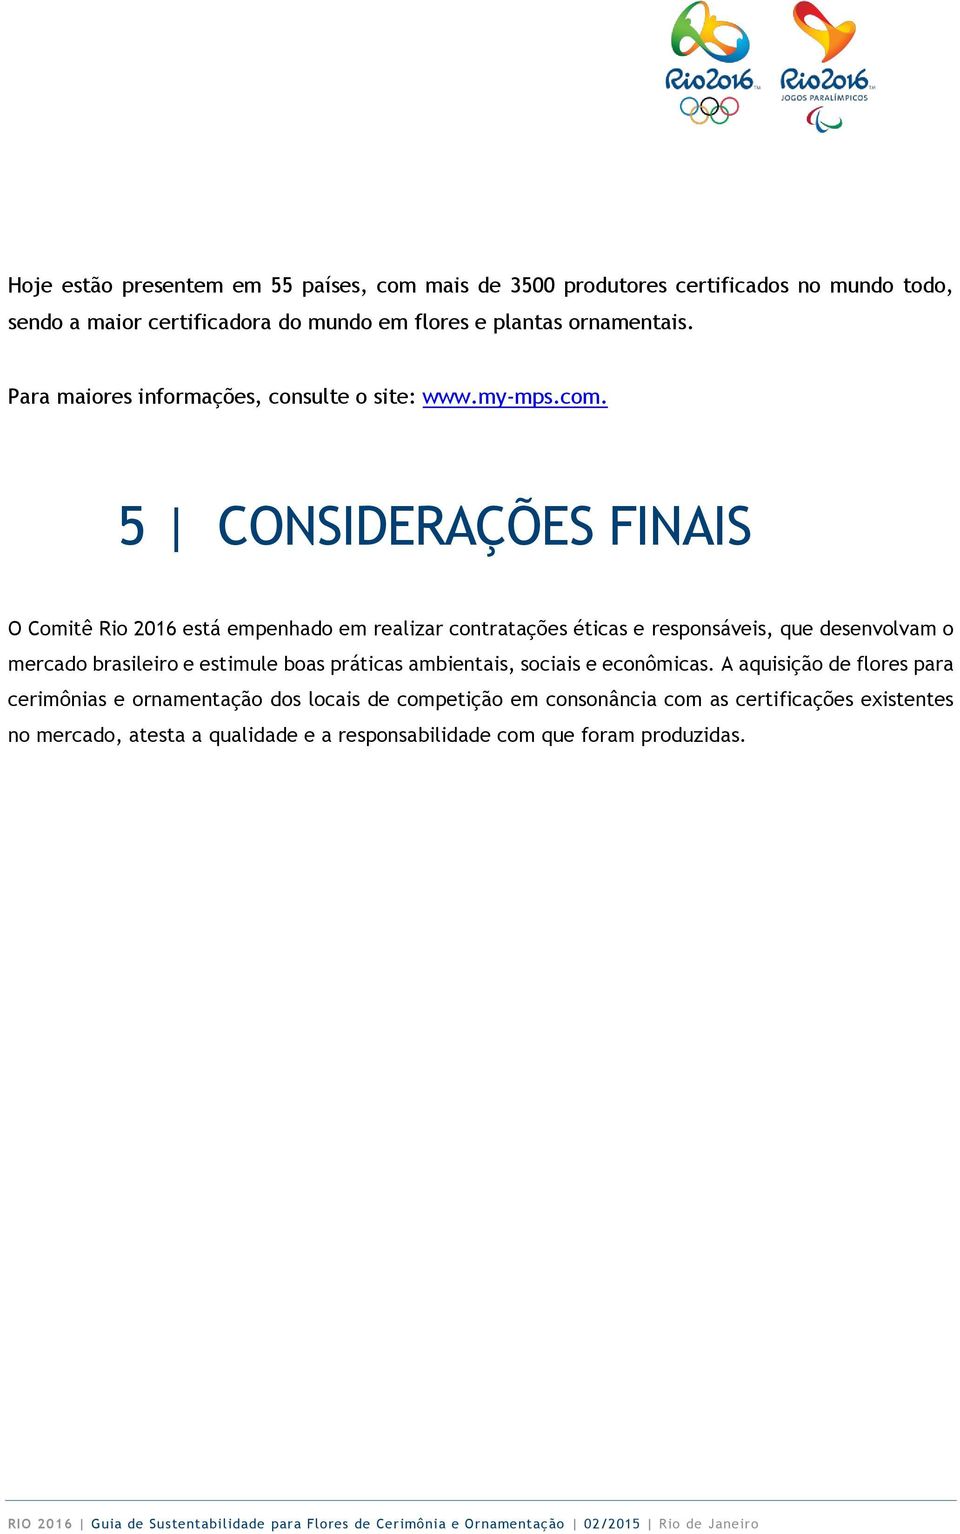 5 CONSIDERAÇÕES FINAIS O Comitê Rio 2016 está empenhado em realizar contratações éticas e responsáveis, que desenvolvam o mercado brasileiro e estimule